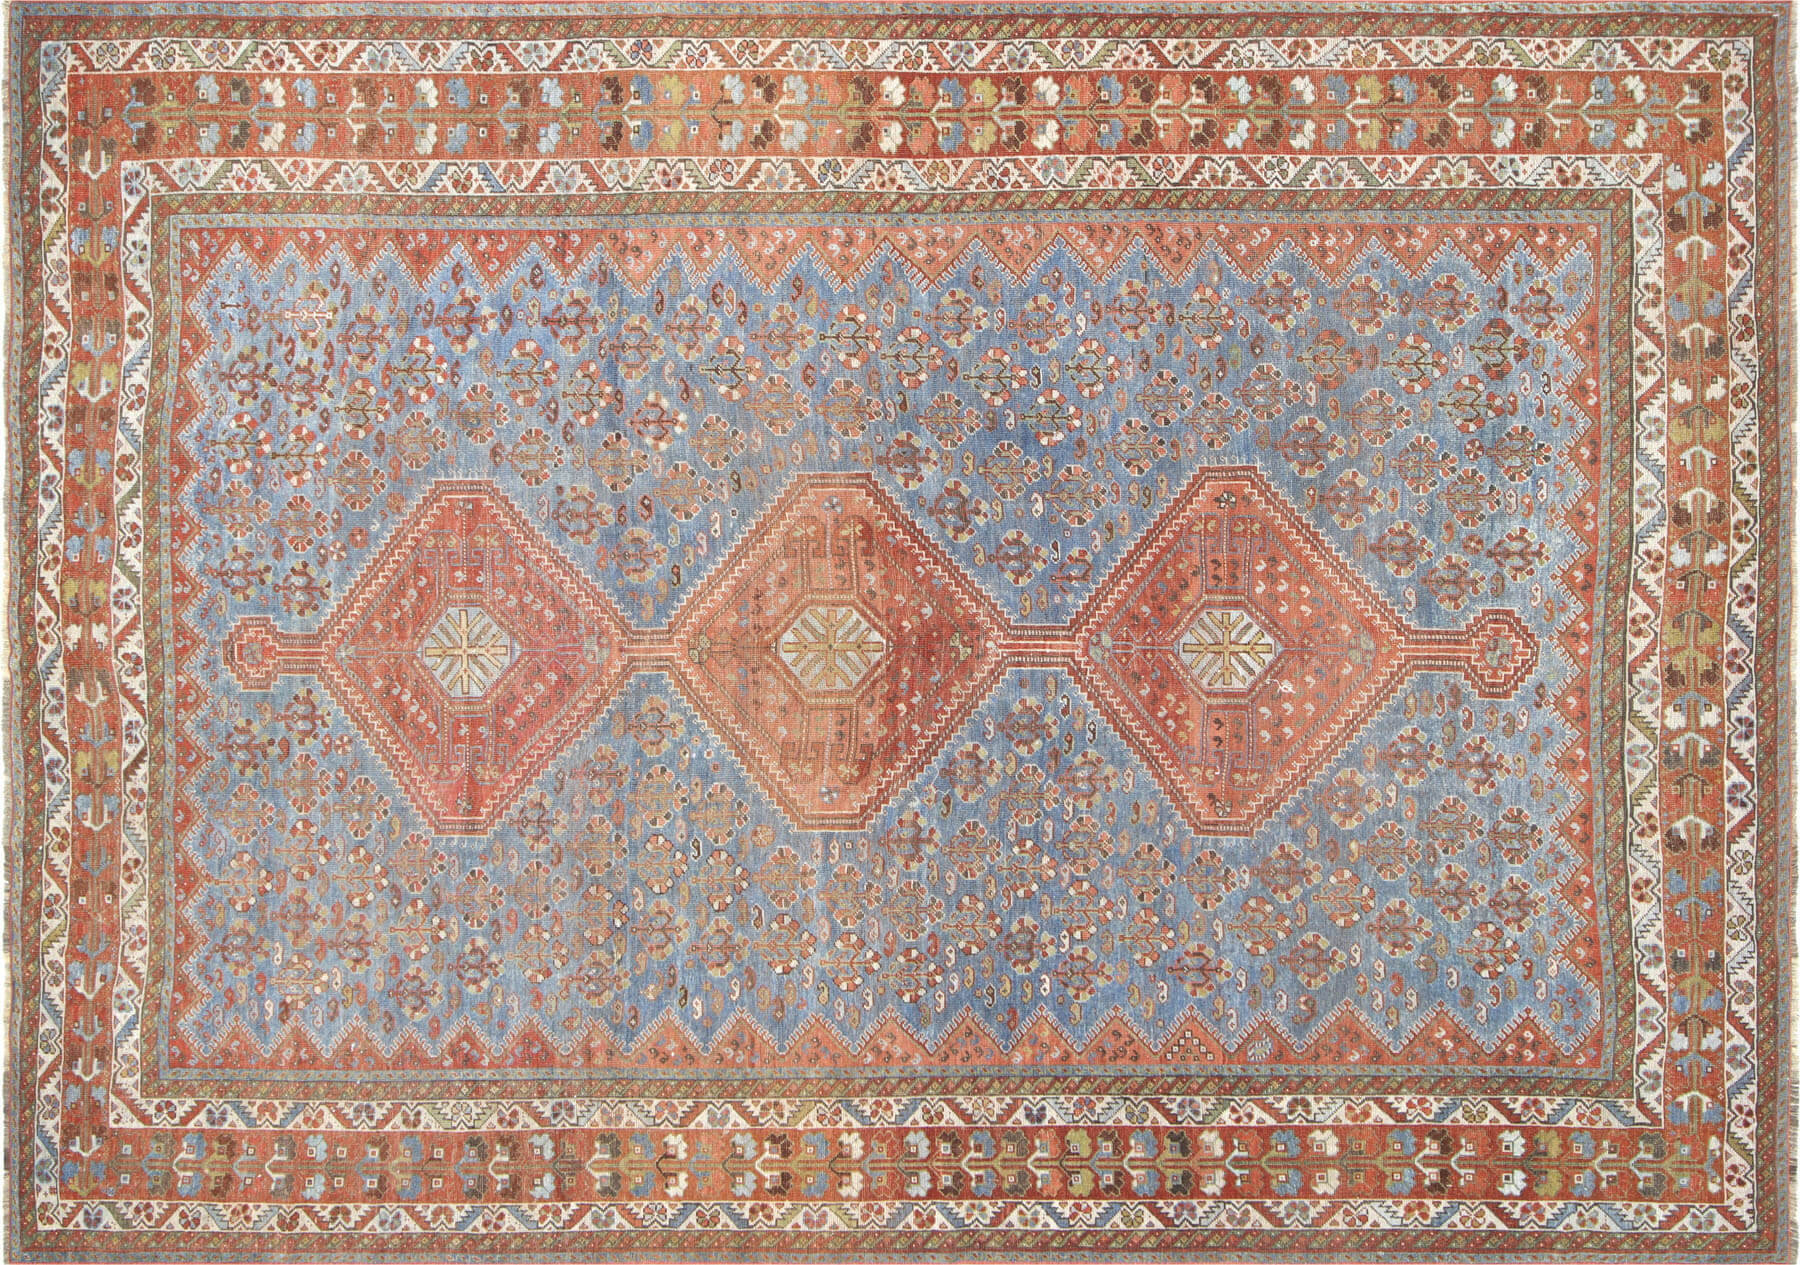 Semi Antique Persian Shiraz Rug - 7'3" x 10'4"